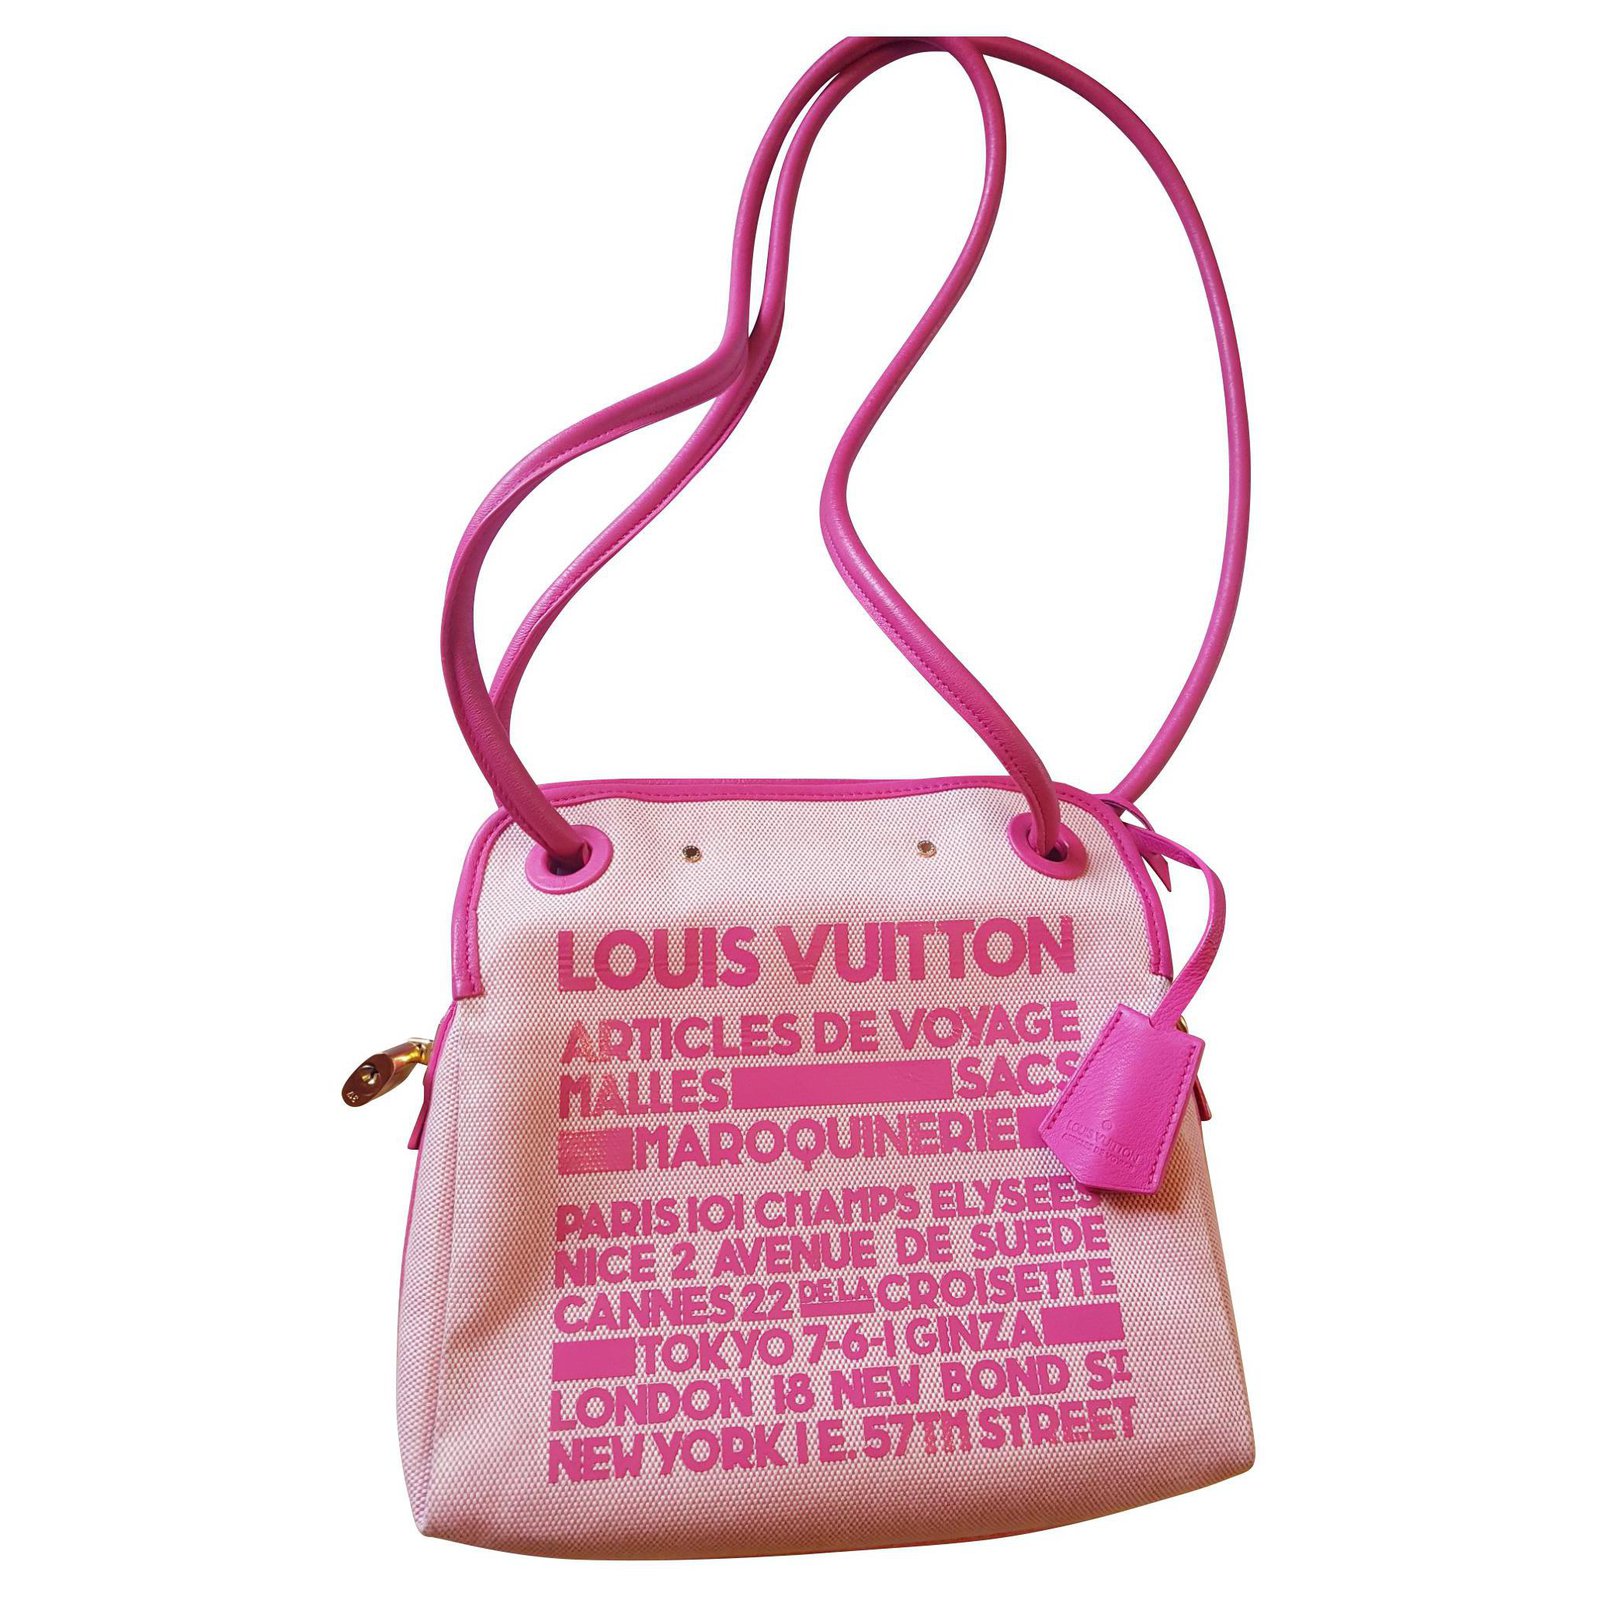 Louis Vuitton Cruise 2009 Collection - Bags 